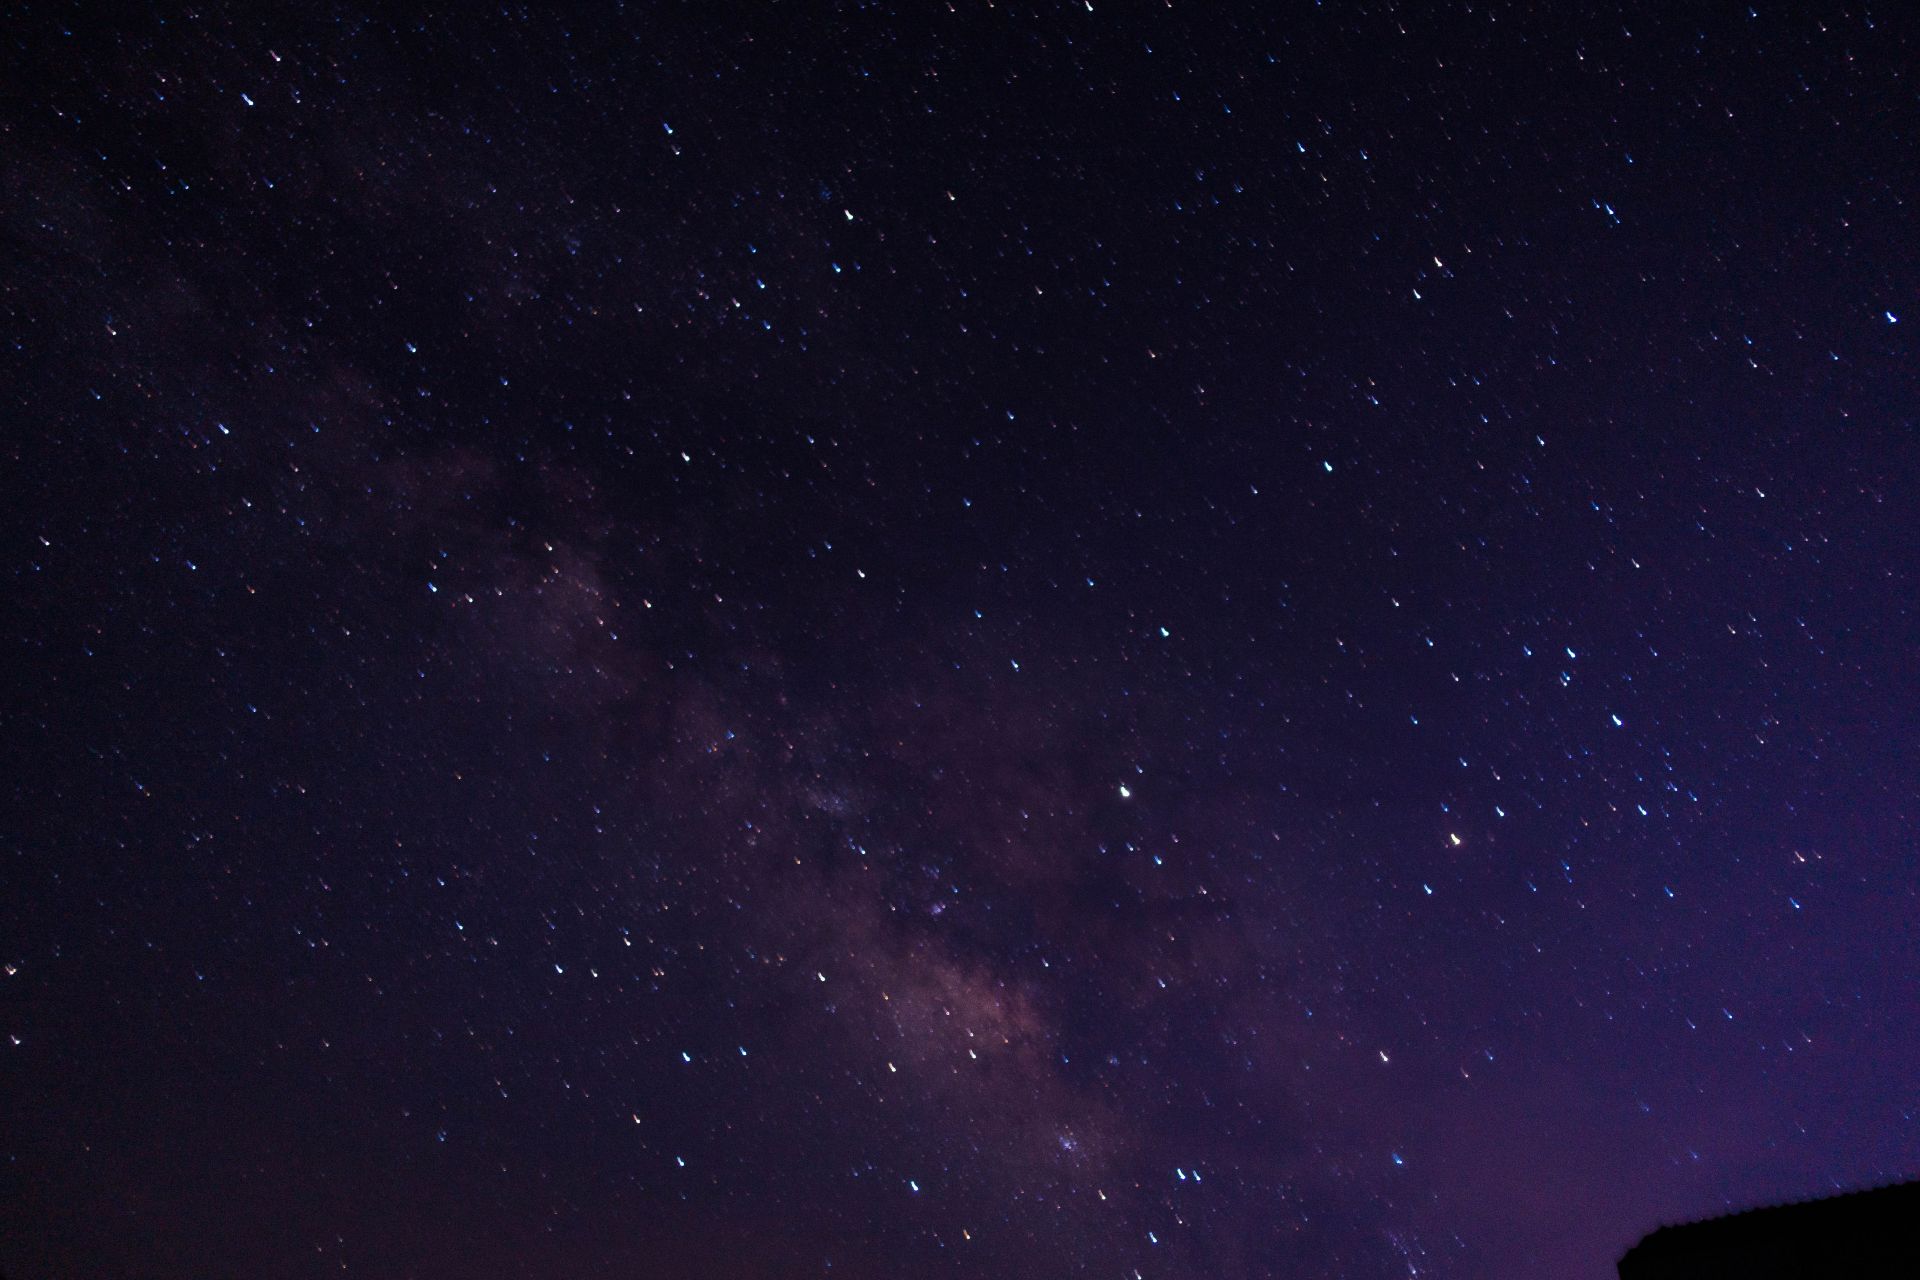 深圳夜空呈現清晰銀河系景象